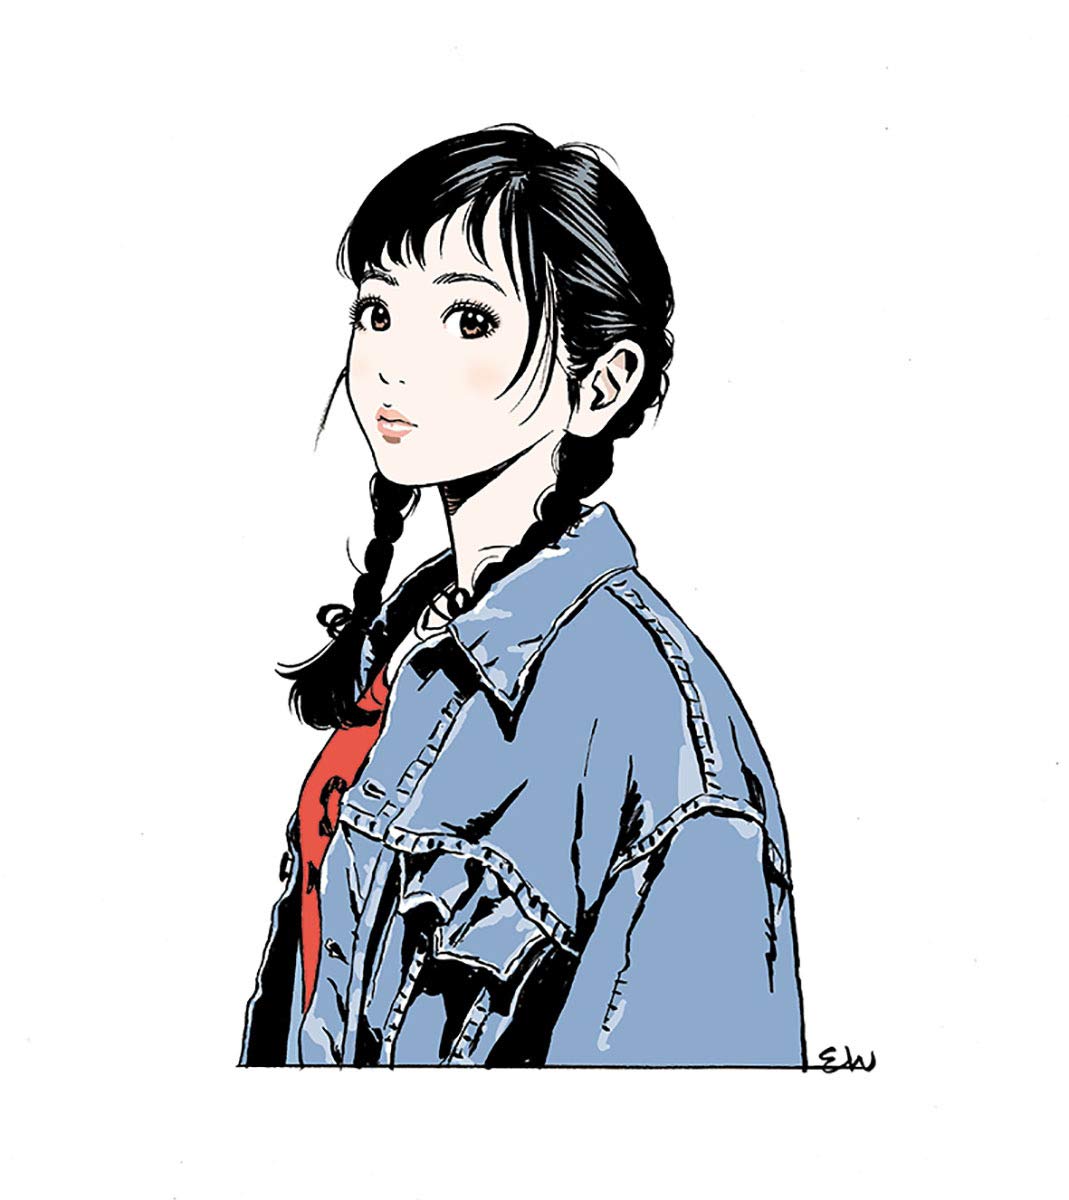 漫画 イラスト 江口寿史先生の描く女の子のイラストが なぜいつの時代もめちゃくちゃ可愛く 輝いているのか こ みるーと